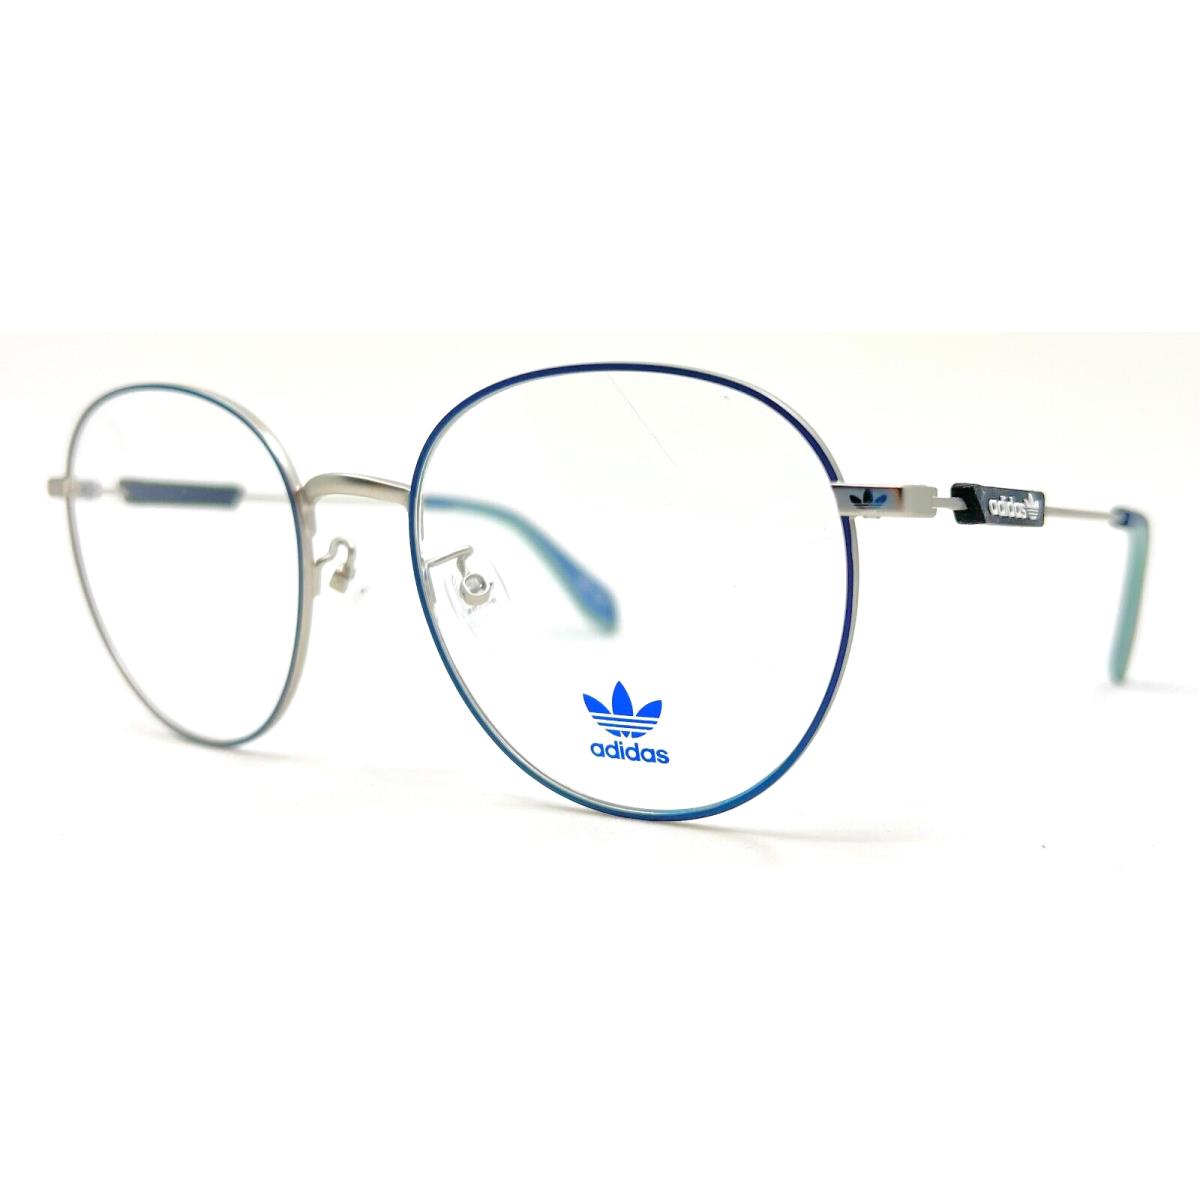 Adidas Originals - OR5033 092 54/19/145 -blue Eyeglasses Case - Frame: Blue